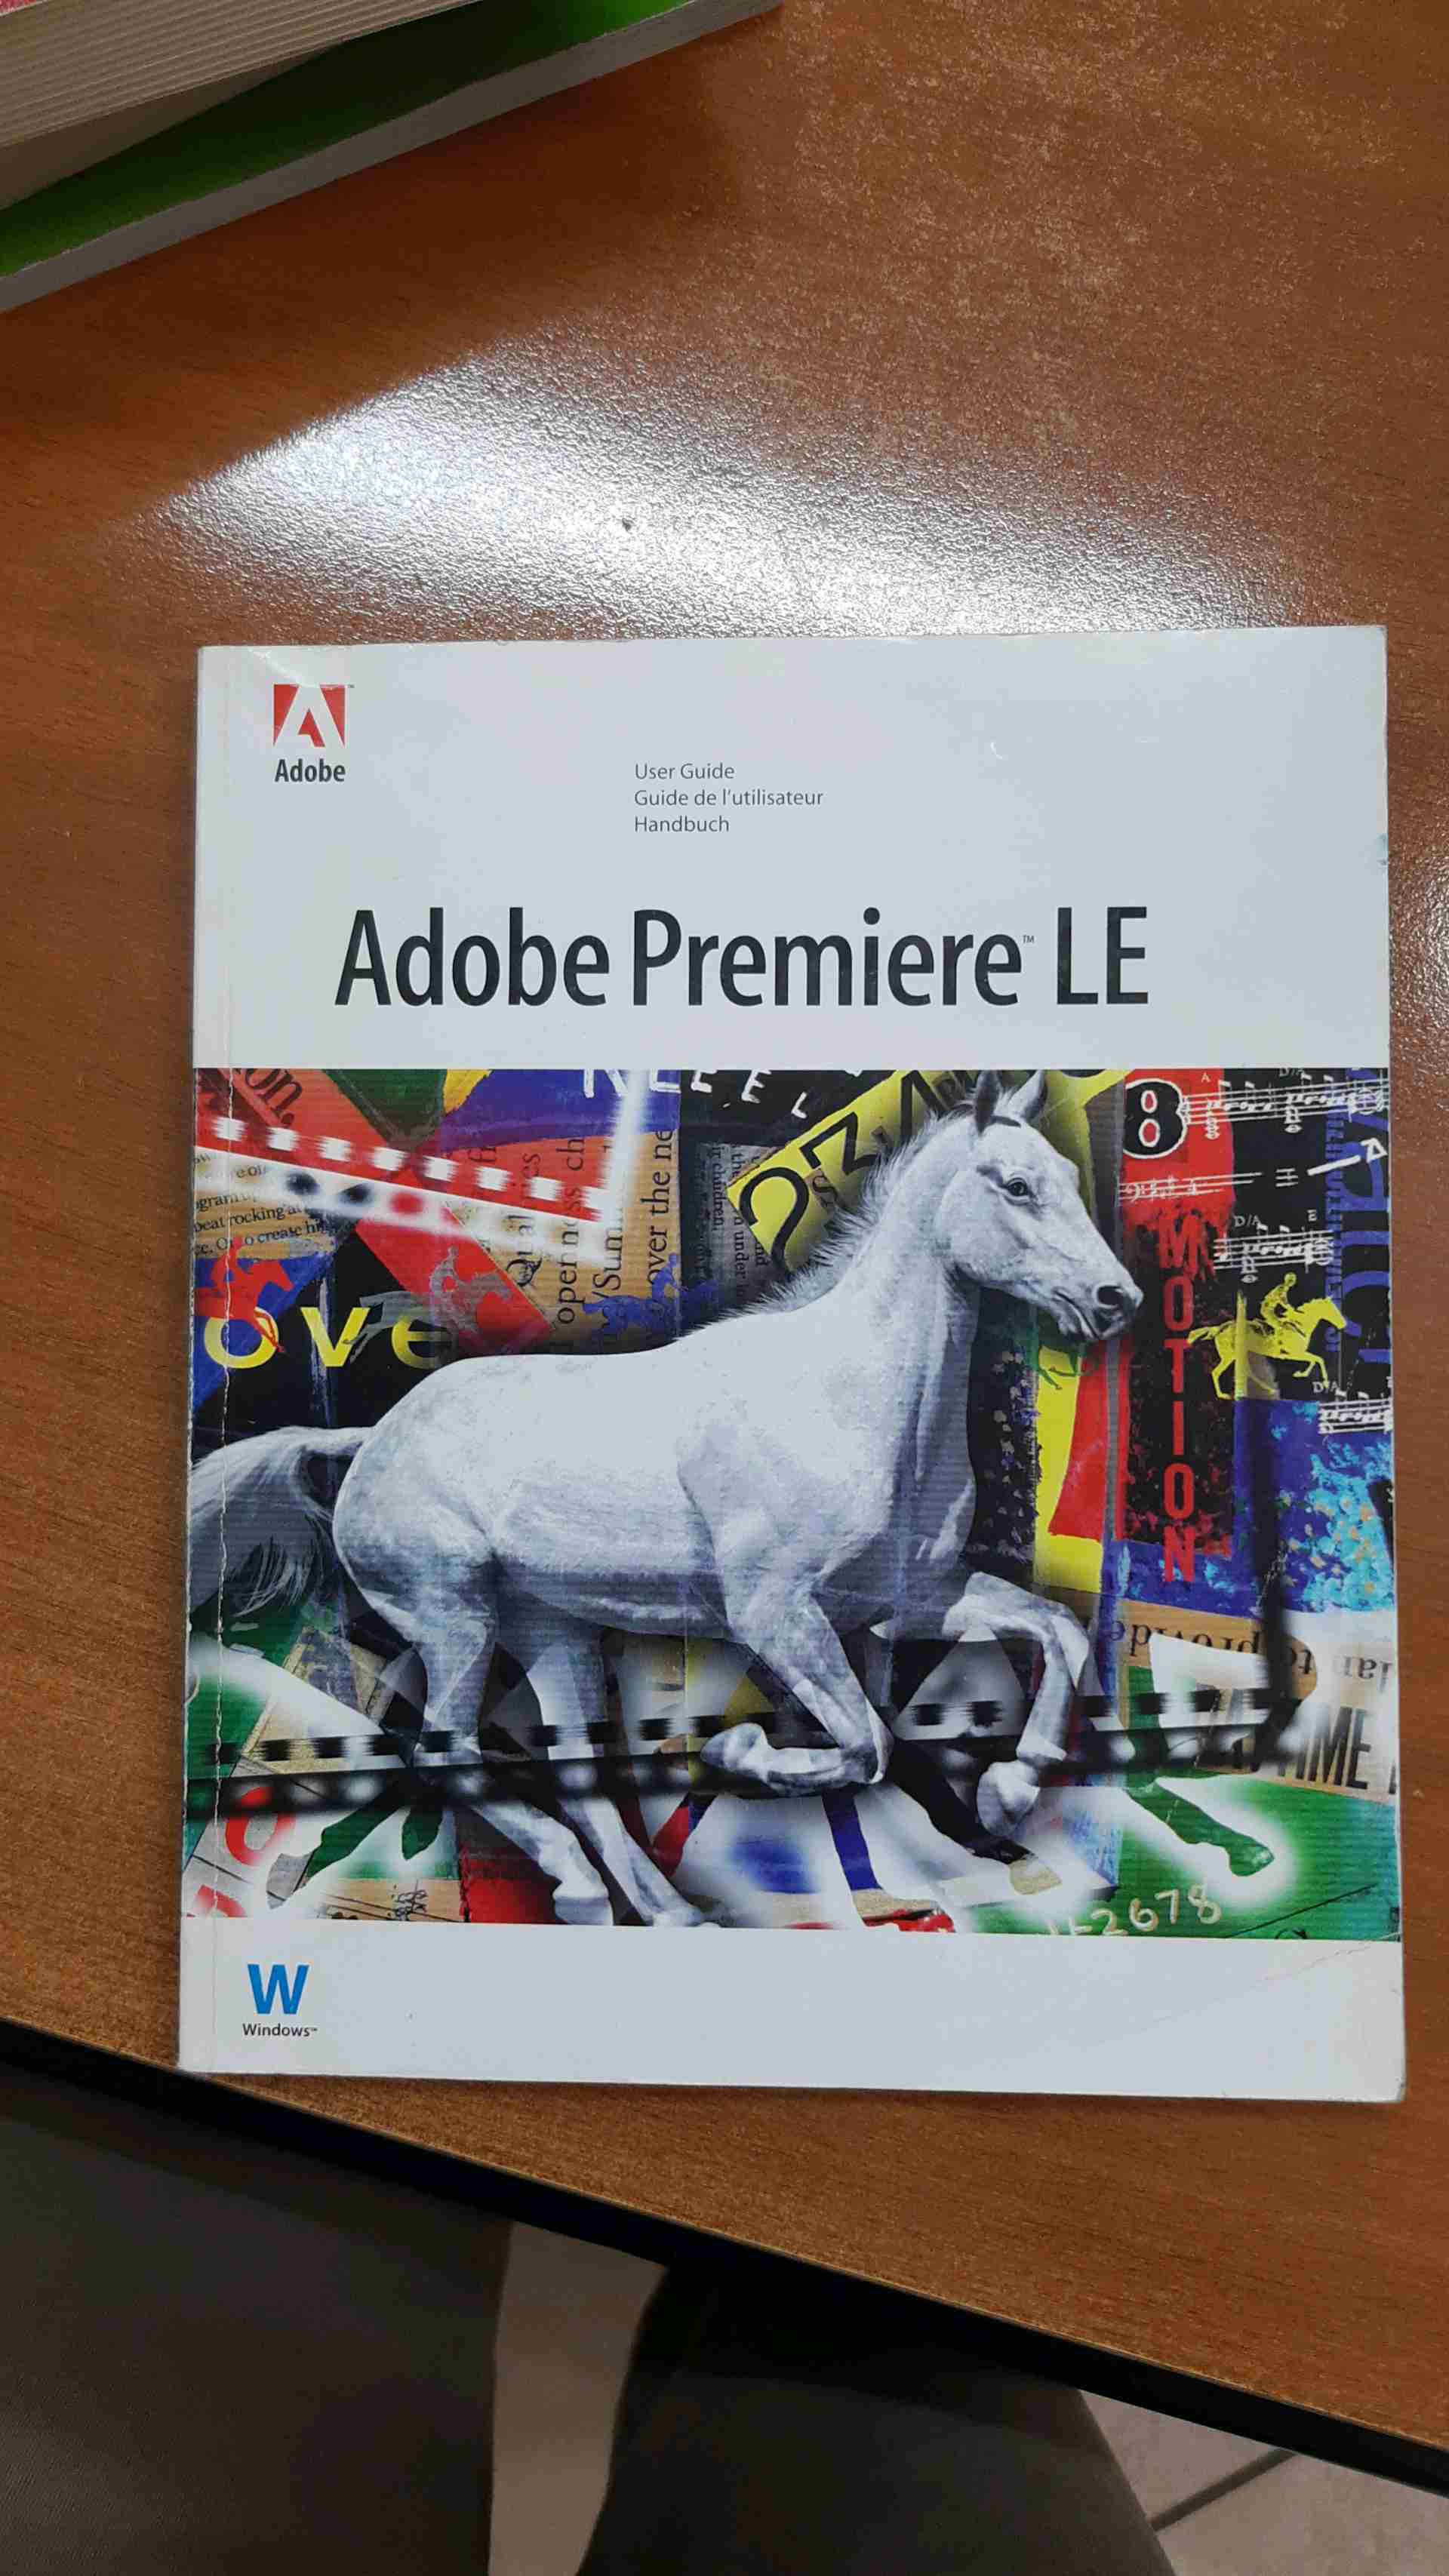 Adobe Premiere LE